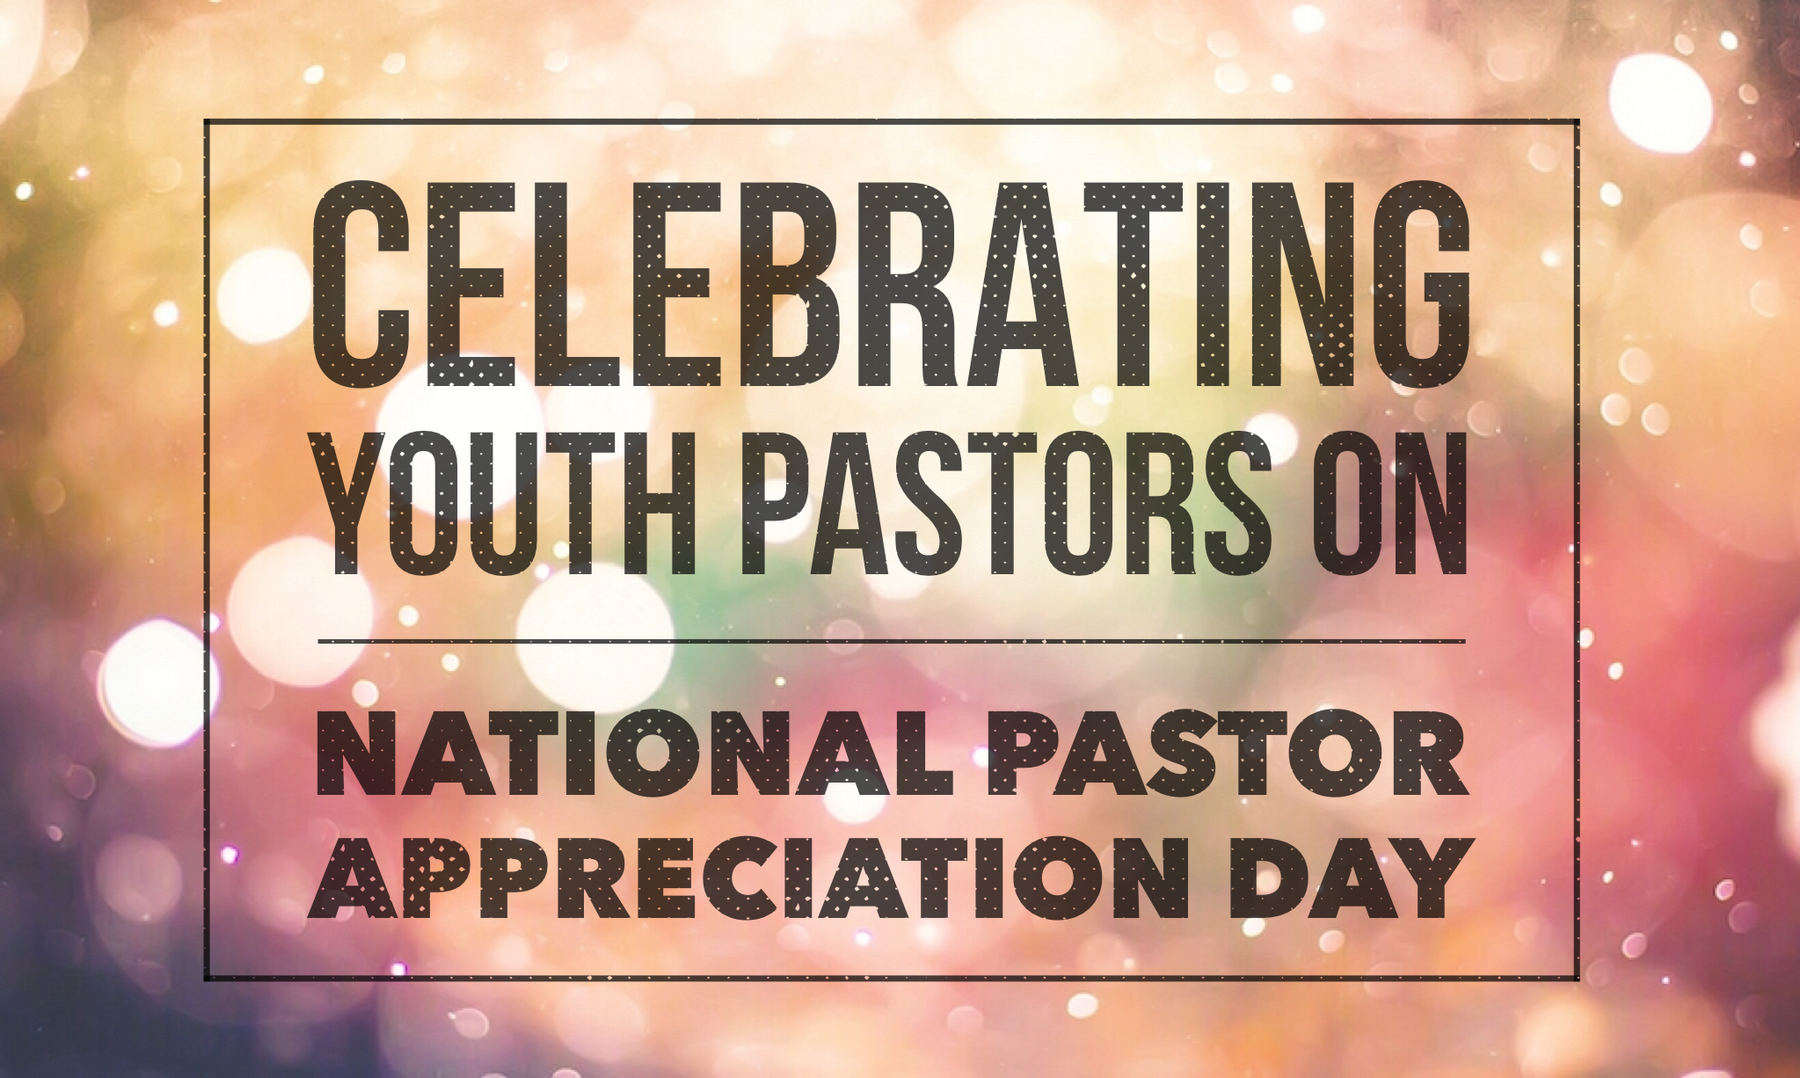 pastor appreciation day